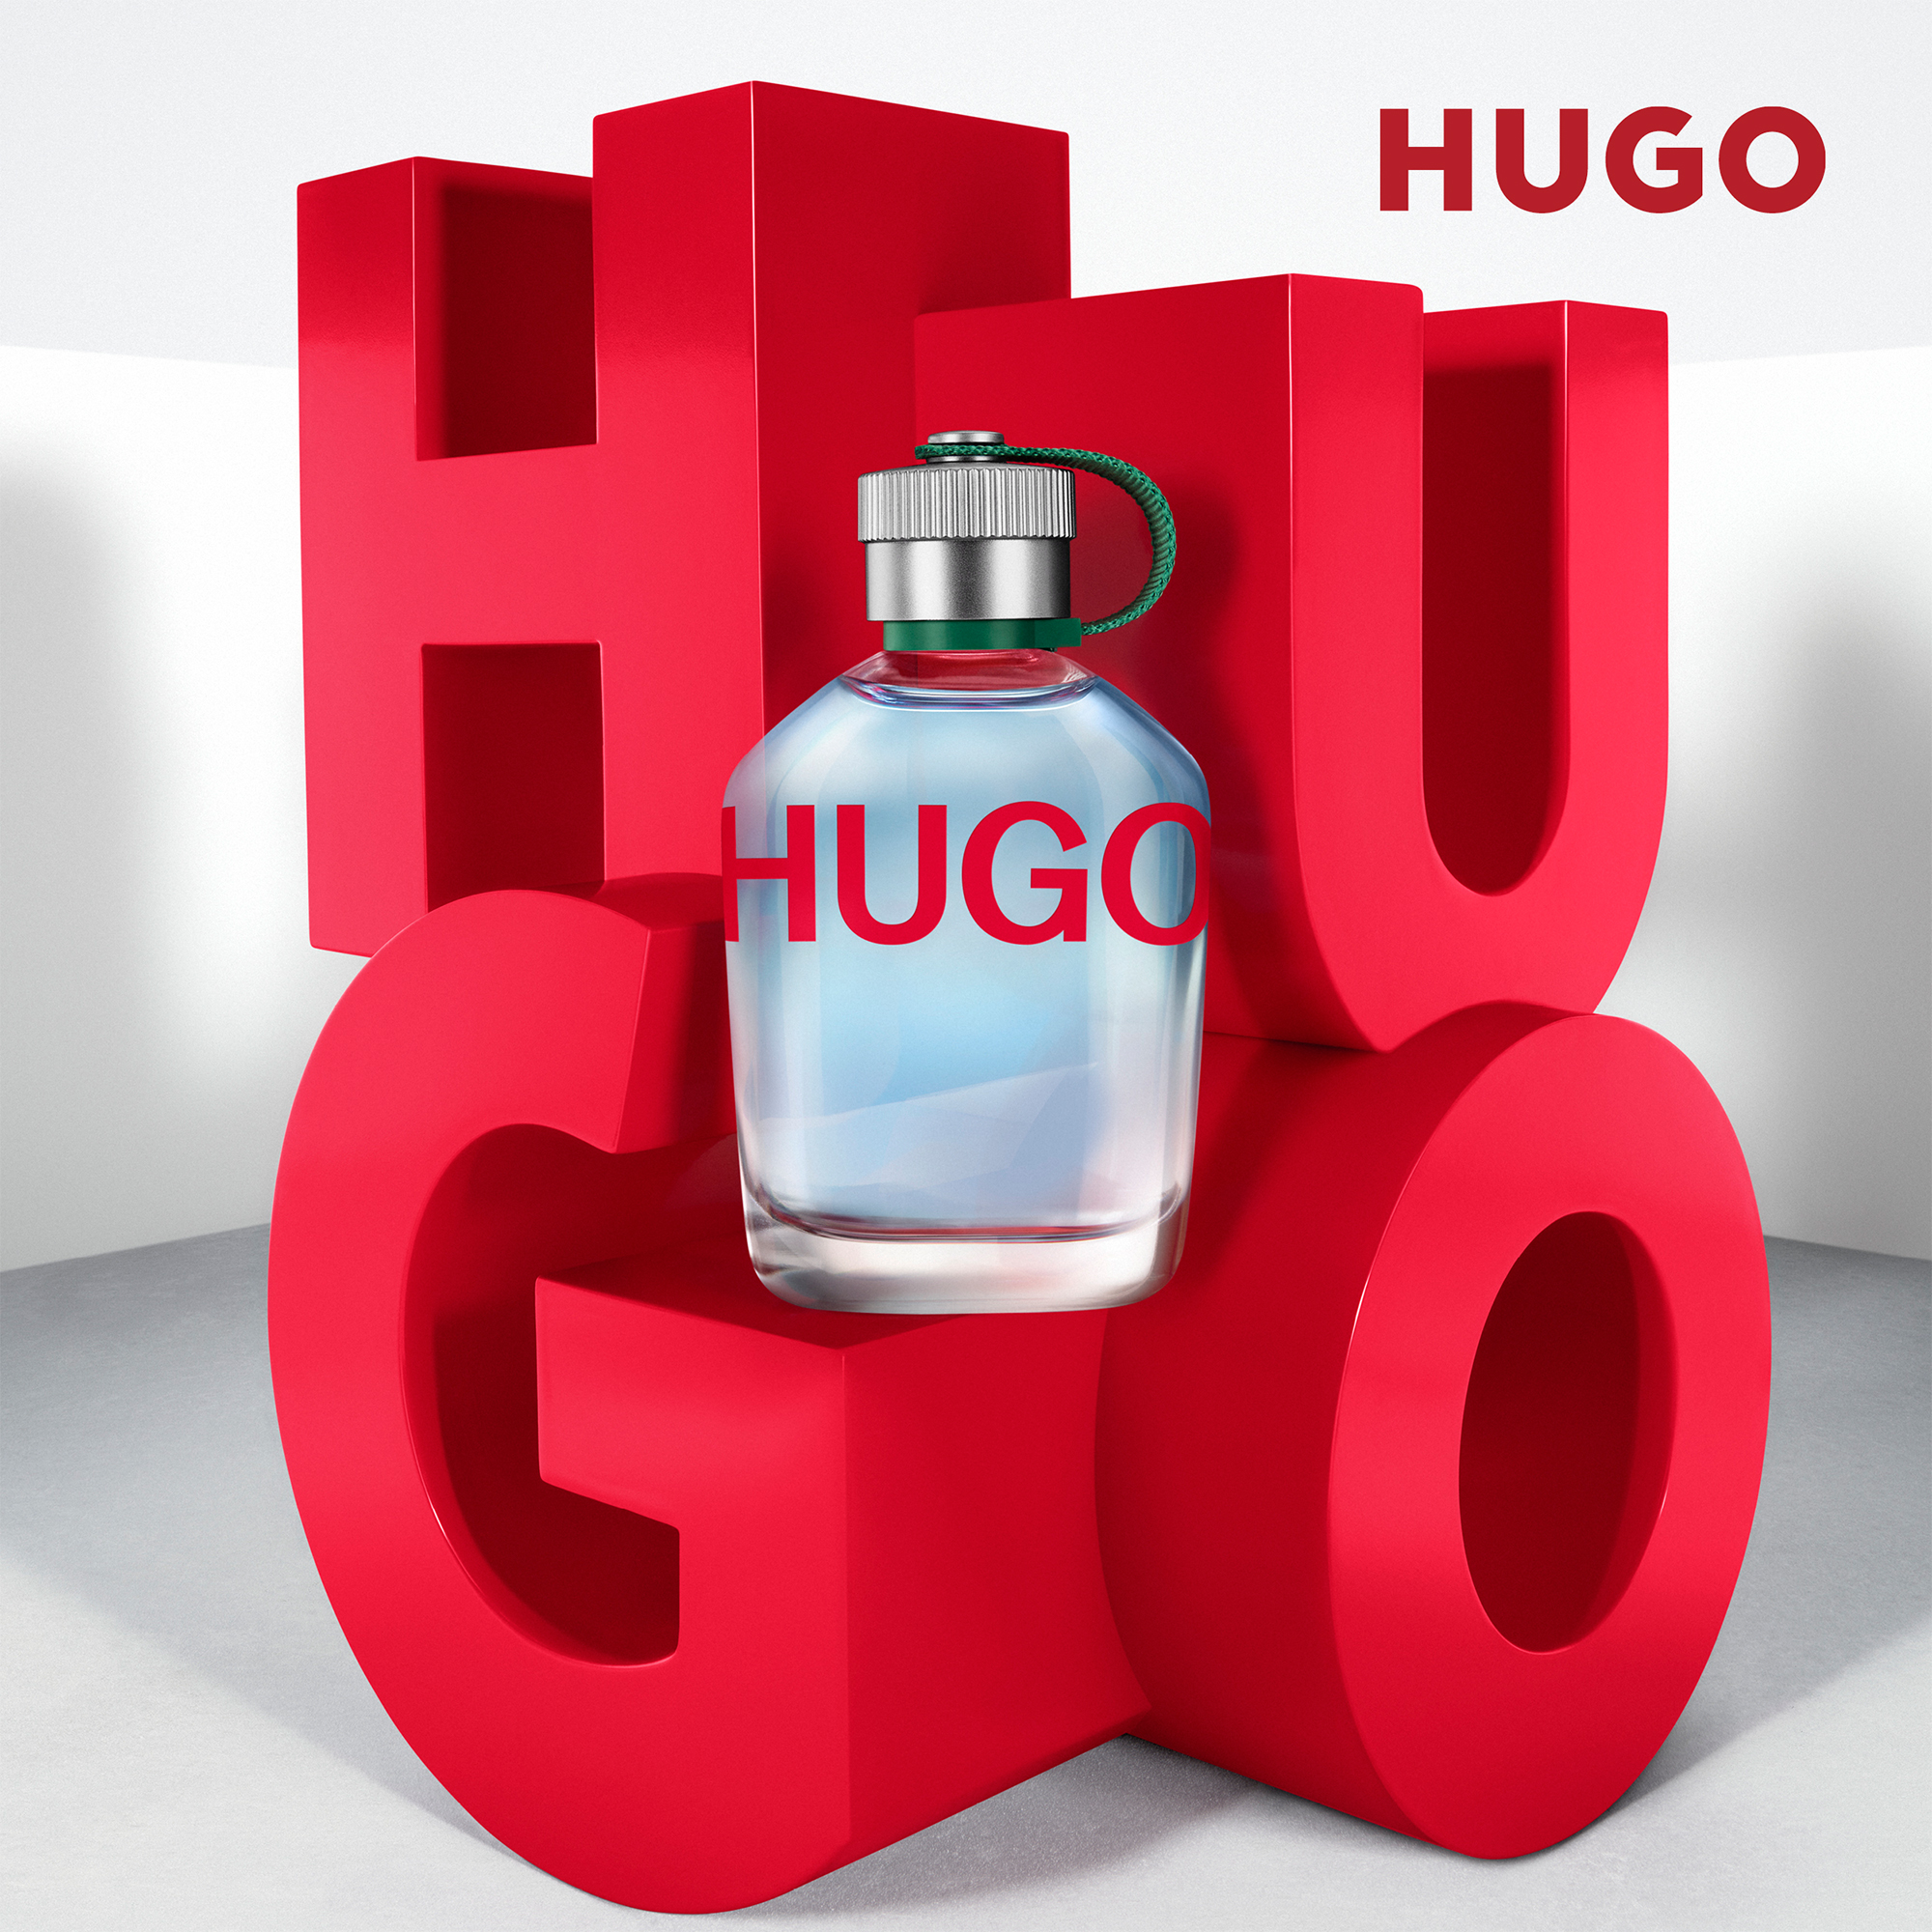 Hugo Hugo Boss cologne - a fragrance for men 1995